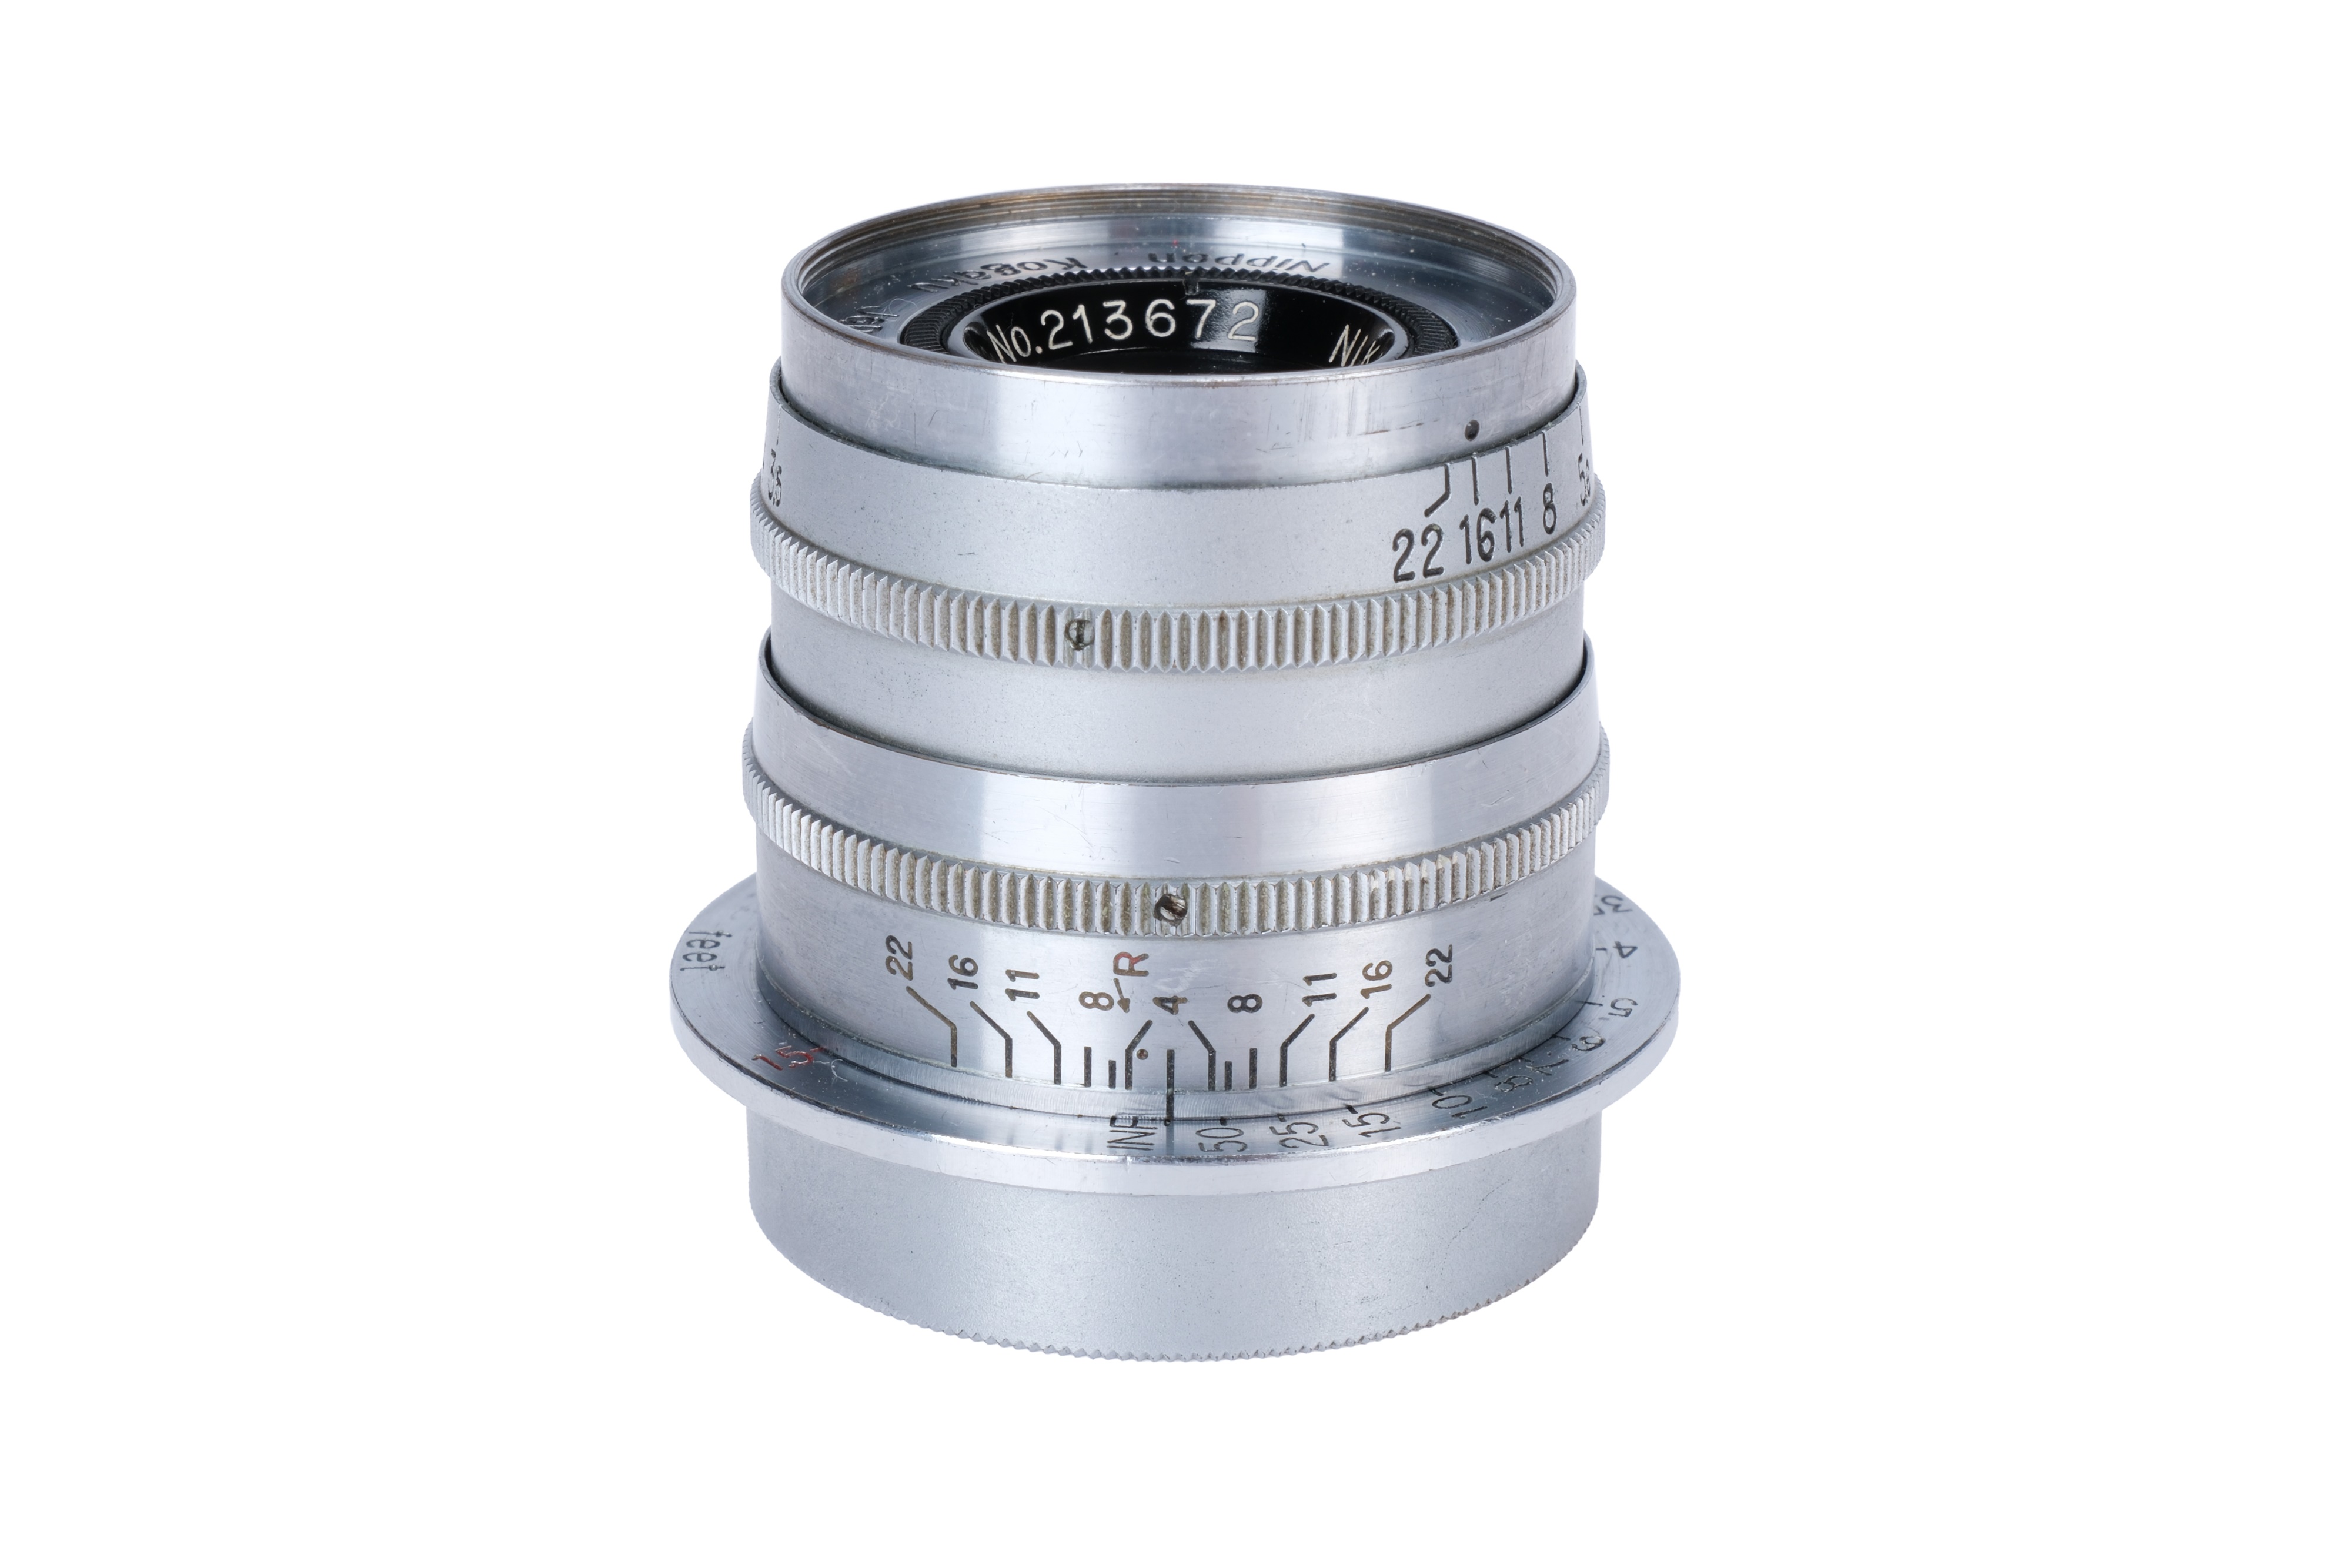 A Nikon Rigid Nikkor-Q.C. f/3.5 50mm Lens, - Image 2 of 4